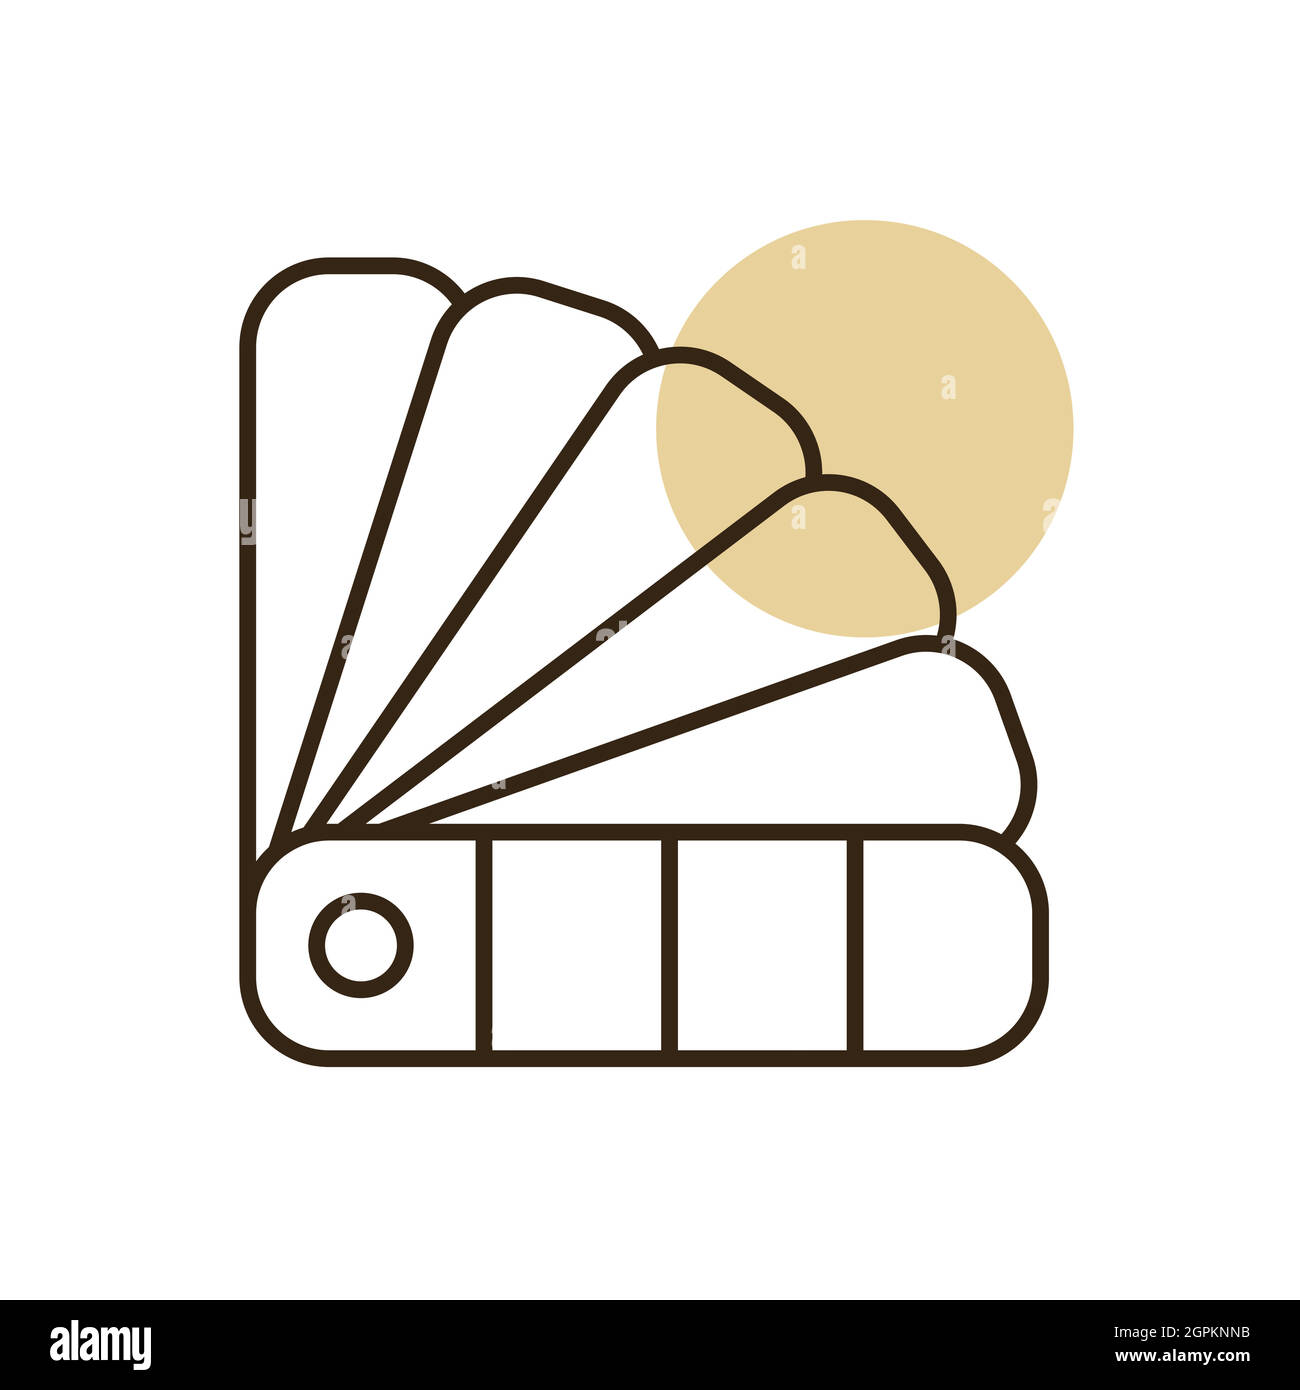 Vektorgrafik für Papierfarbpalette – isoliertes flaches Symbol Stock Vektor